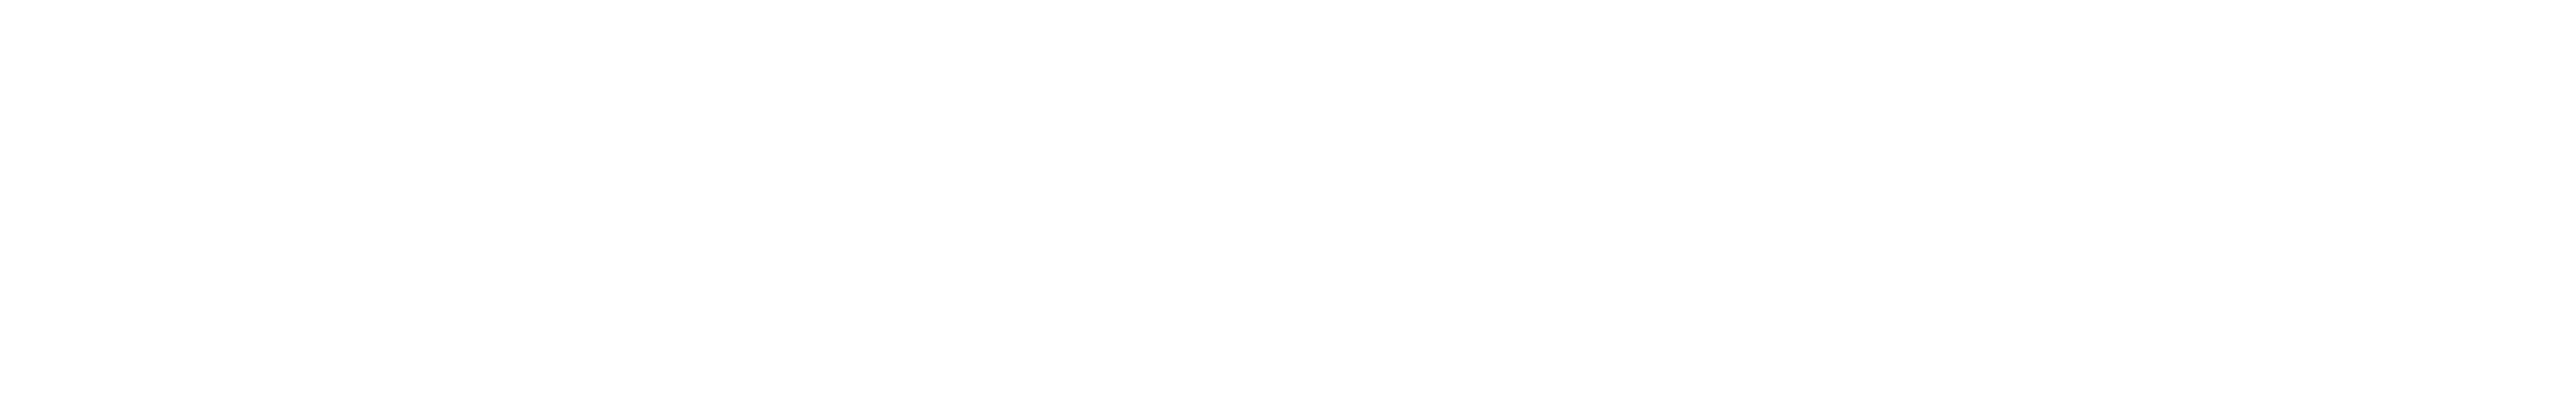 logo bernd schmalenberger srl, akn